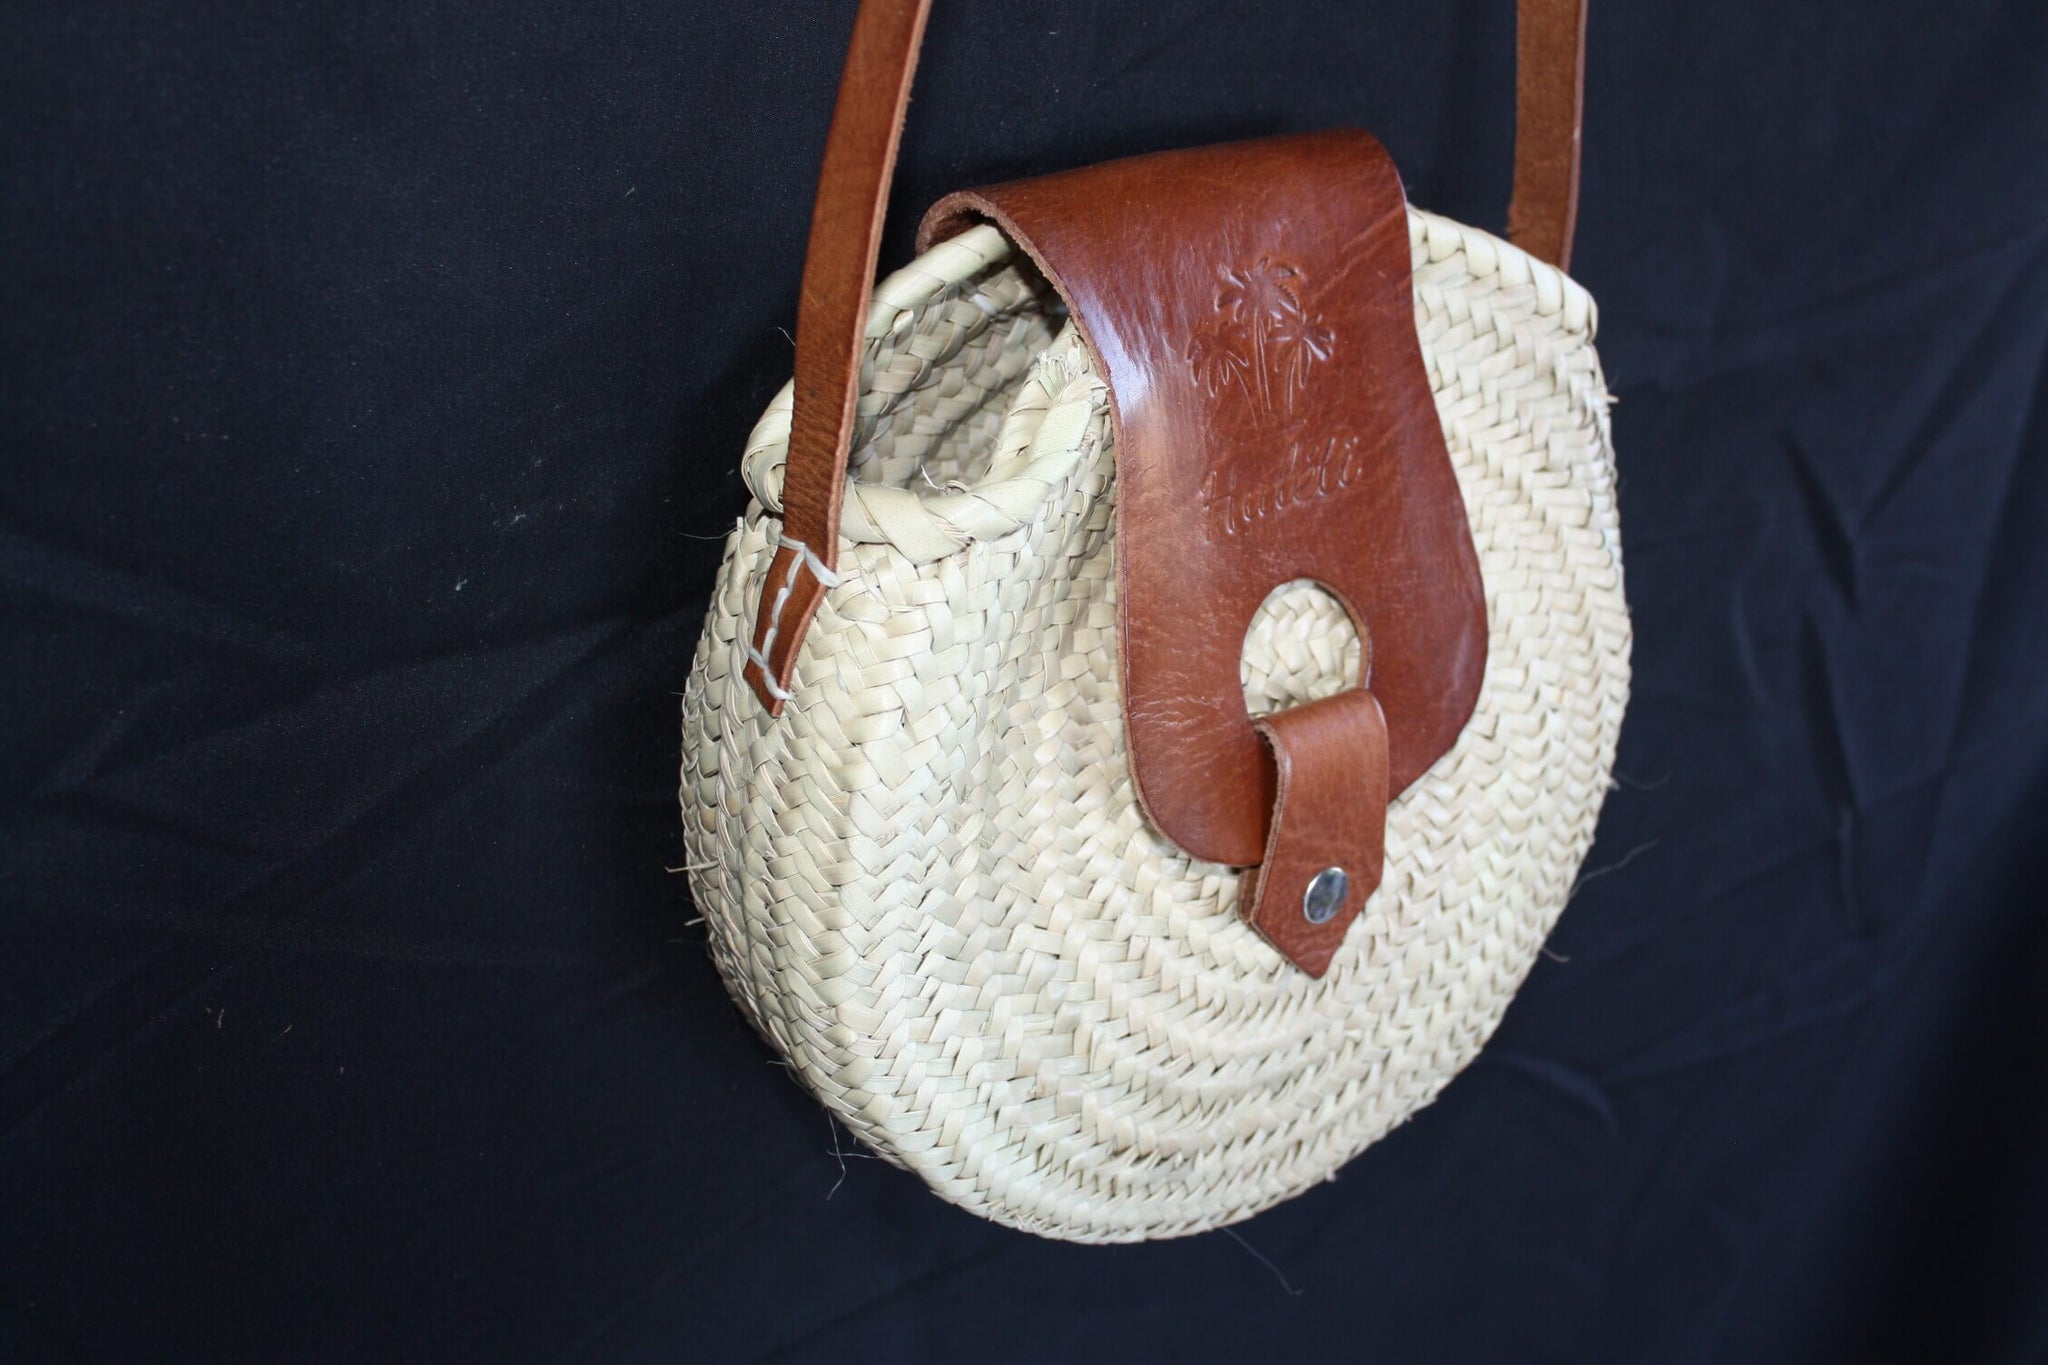 SUPERB Palm Tree Round Bag mit Schultergurt - Leder oder Wildleder - HANDGEFERTIGT - Marokkanische Handwerkskunst - Sommerfrau